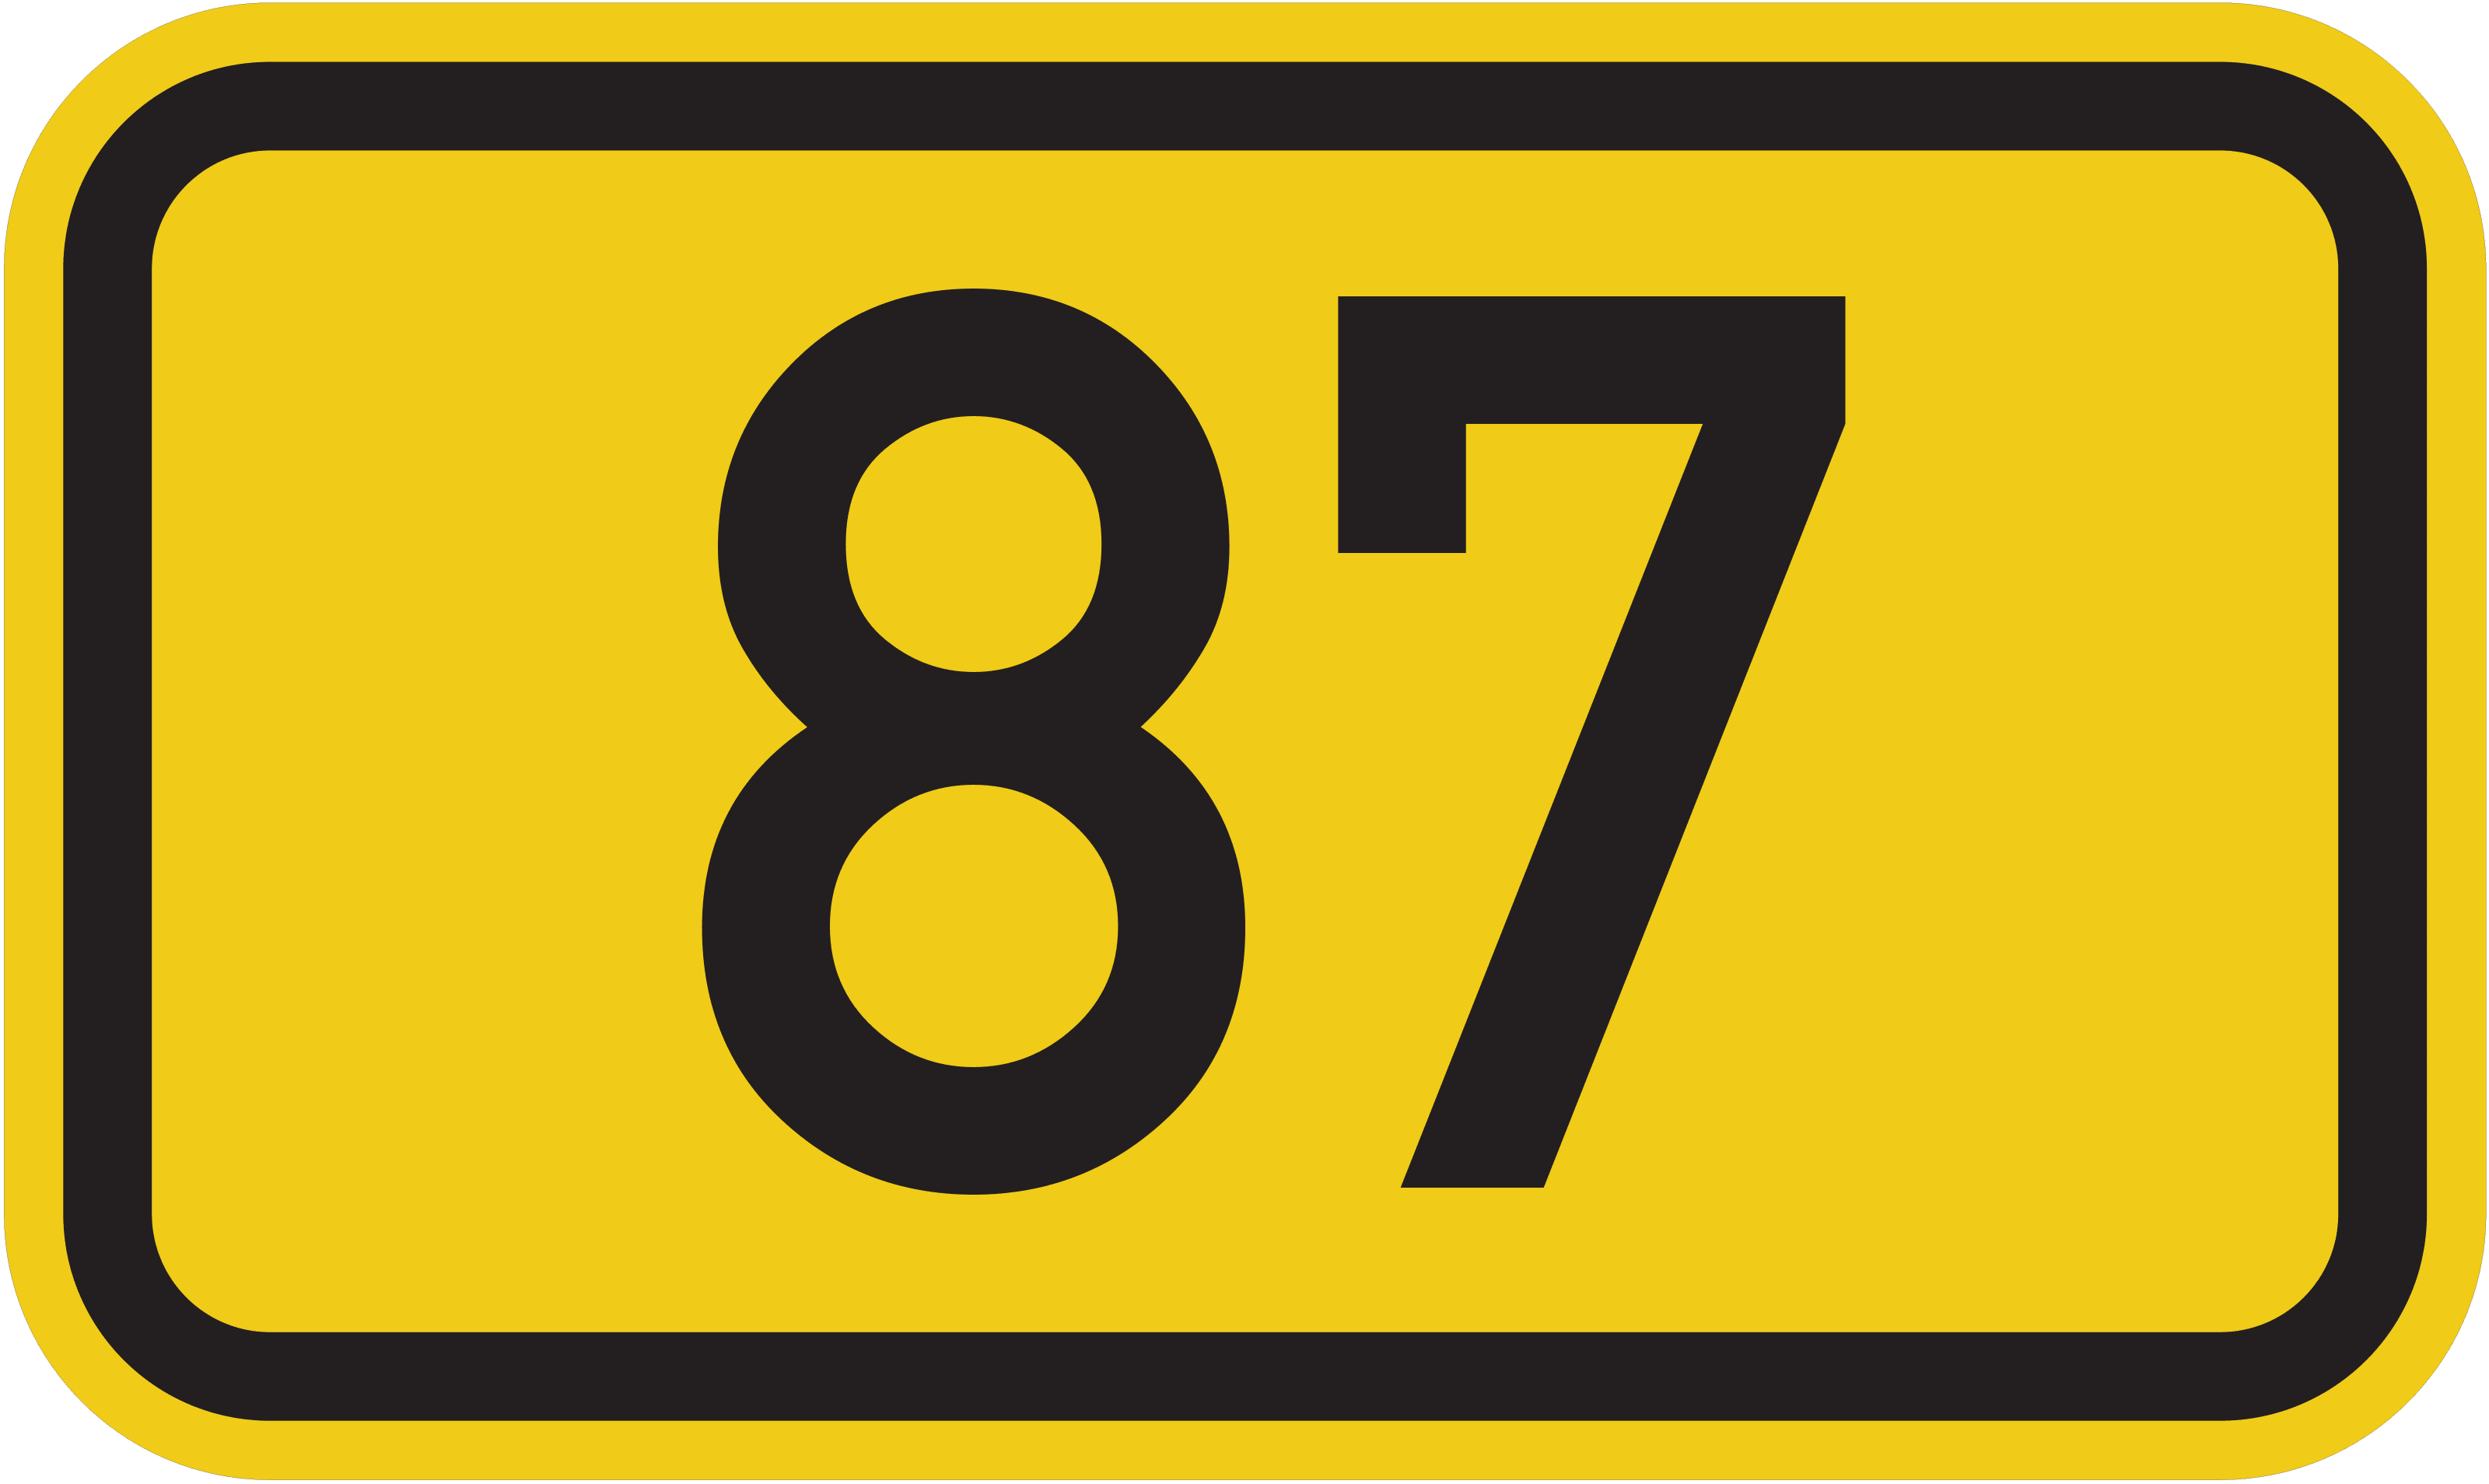 Bundesstraße B 87